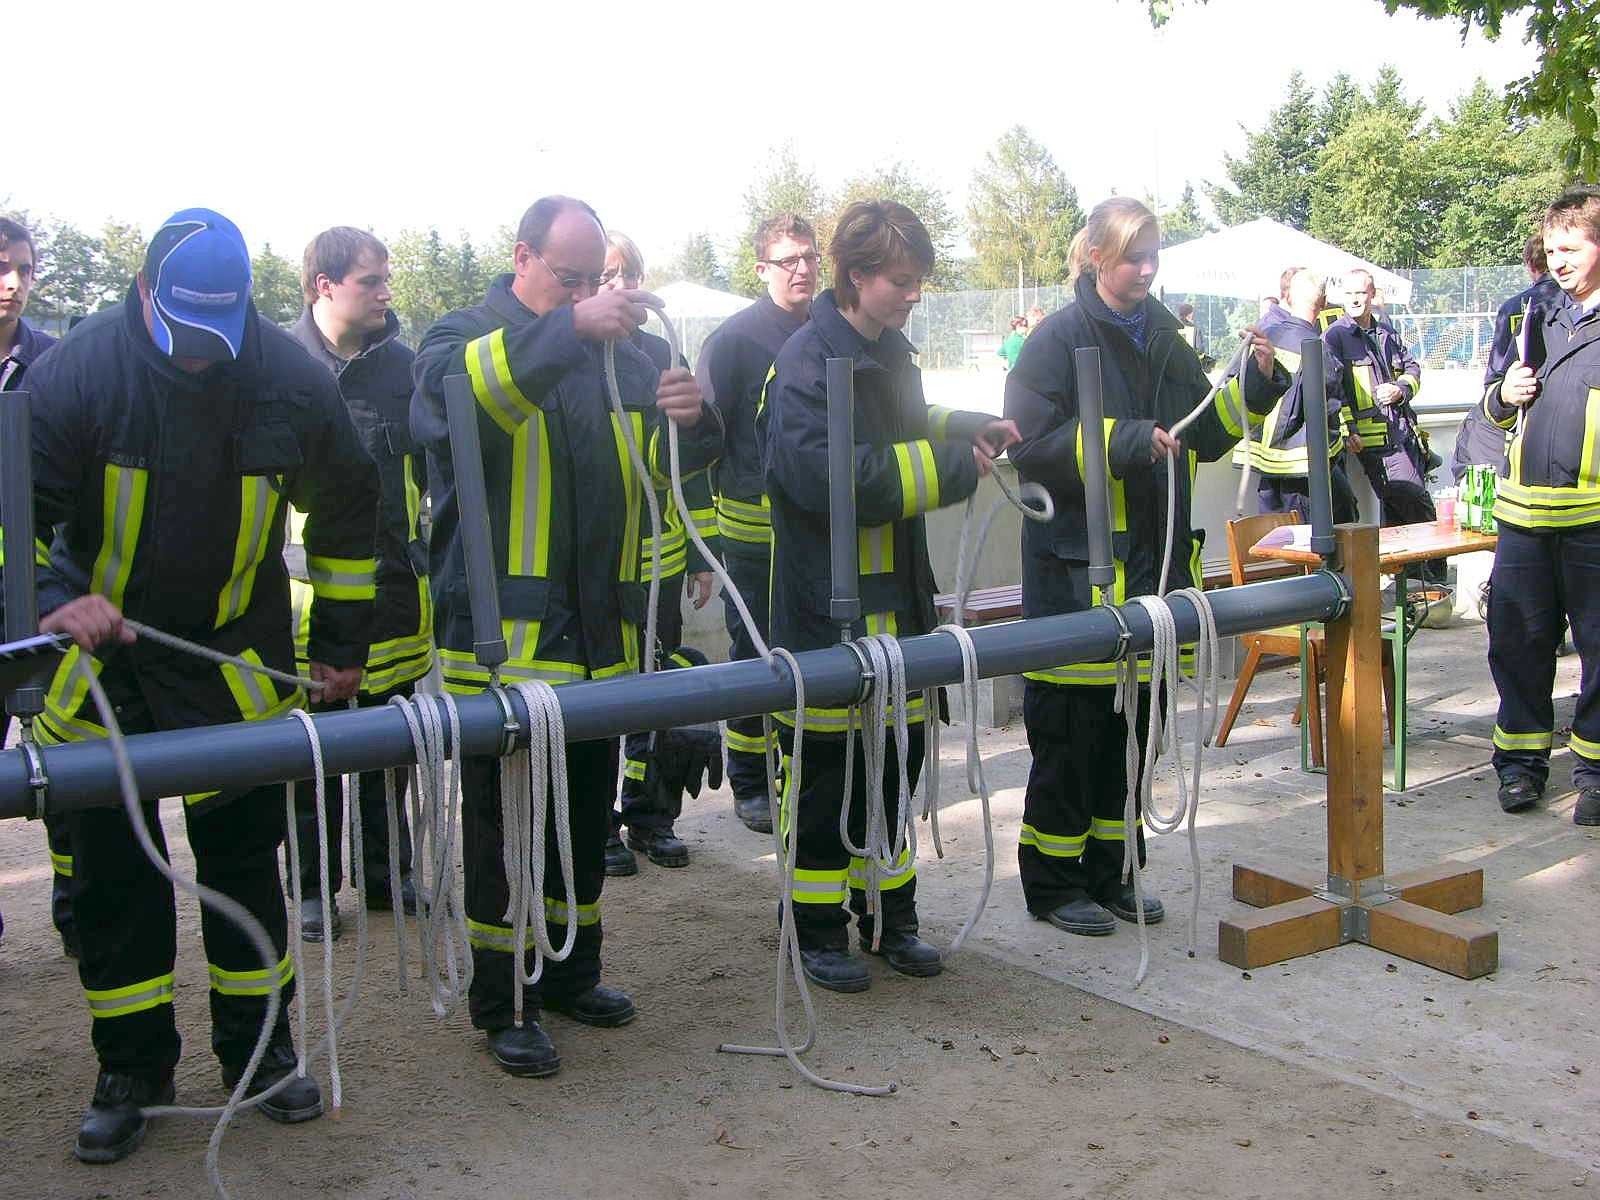 Seit 1991 wird im Hochsauerlandkreis der Leistungsnachweis der Feuerwehren nach den Richtlinien des Feuerwehrverbandes durchgeführt. Die Löschgruppe Berge der Freiwilligen Feuerwehr Meschede war am Samstag Ausrichter dieser fast schon traditionellen mittlerweile 21. Veranstaltung.